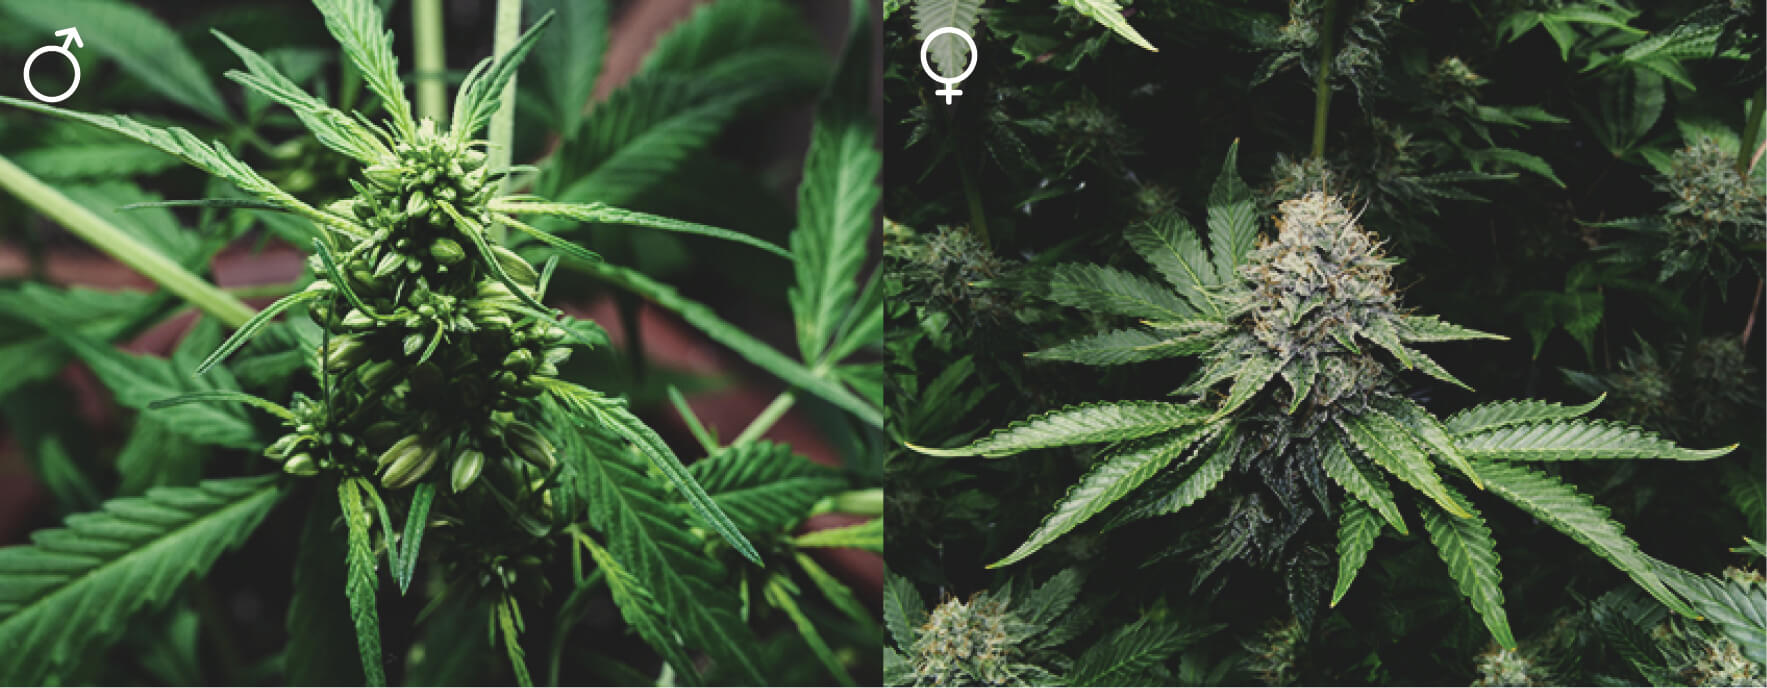 Czy wszystkie rośliny cannabis są takie same?